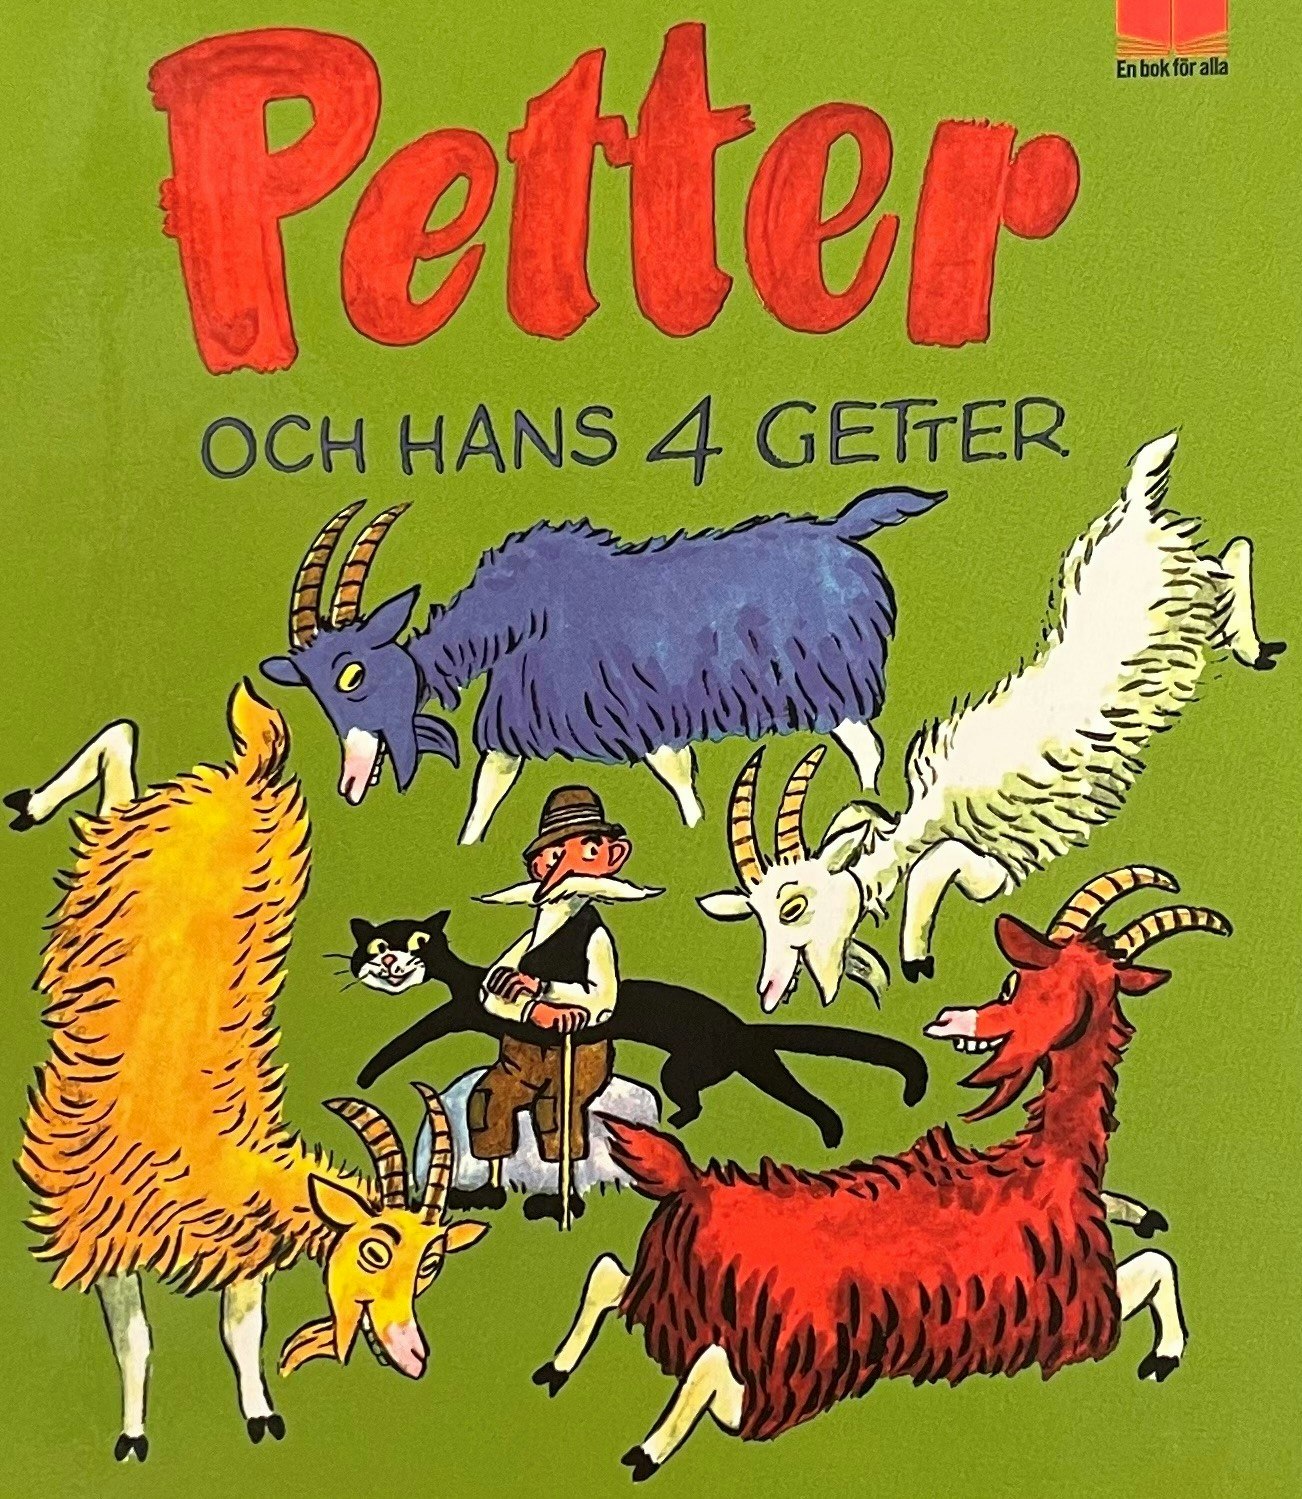 Barnbok Petter och hans fyra Getter